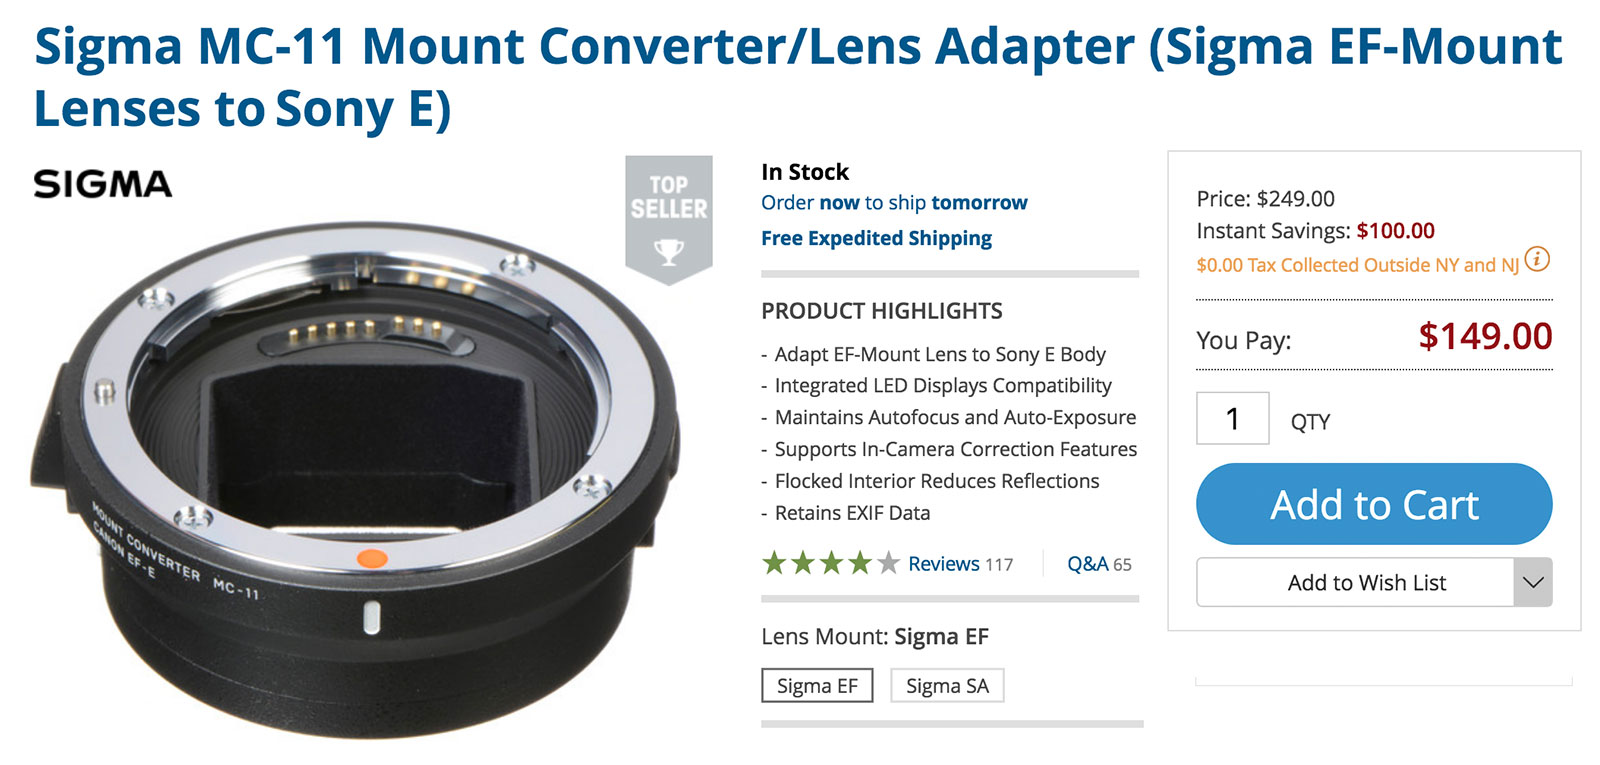 Save on Sigma MC-11 Lens Adapter & Sigma E-mount Lenses